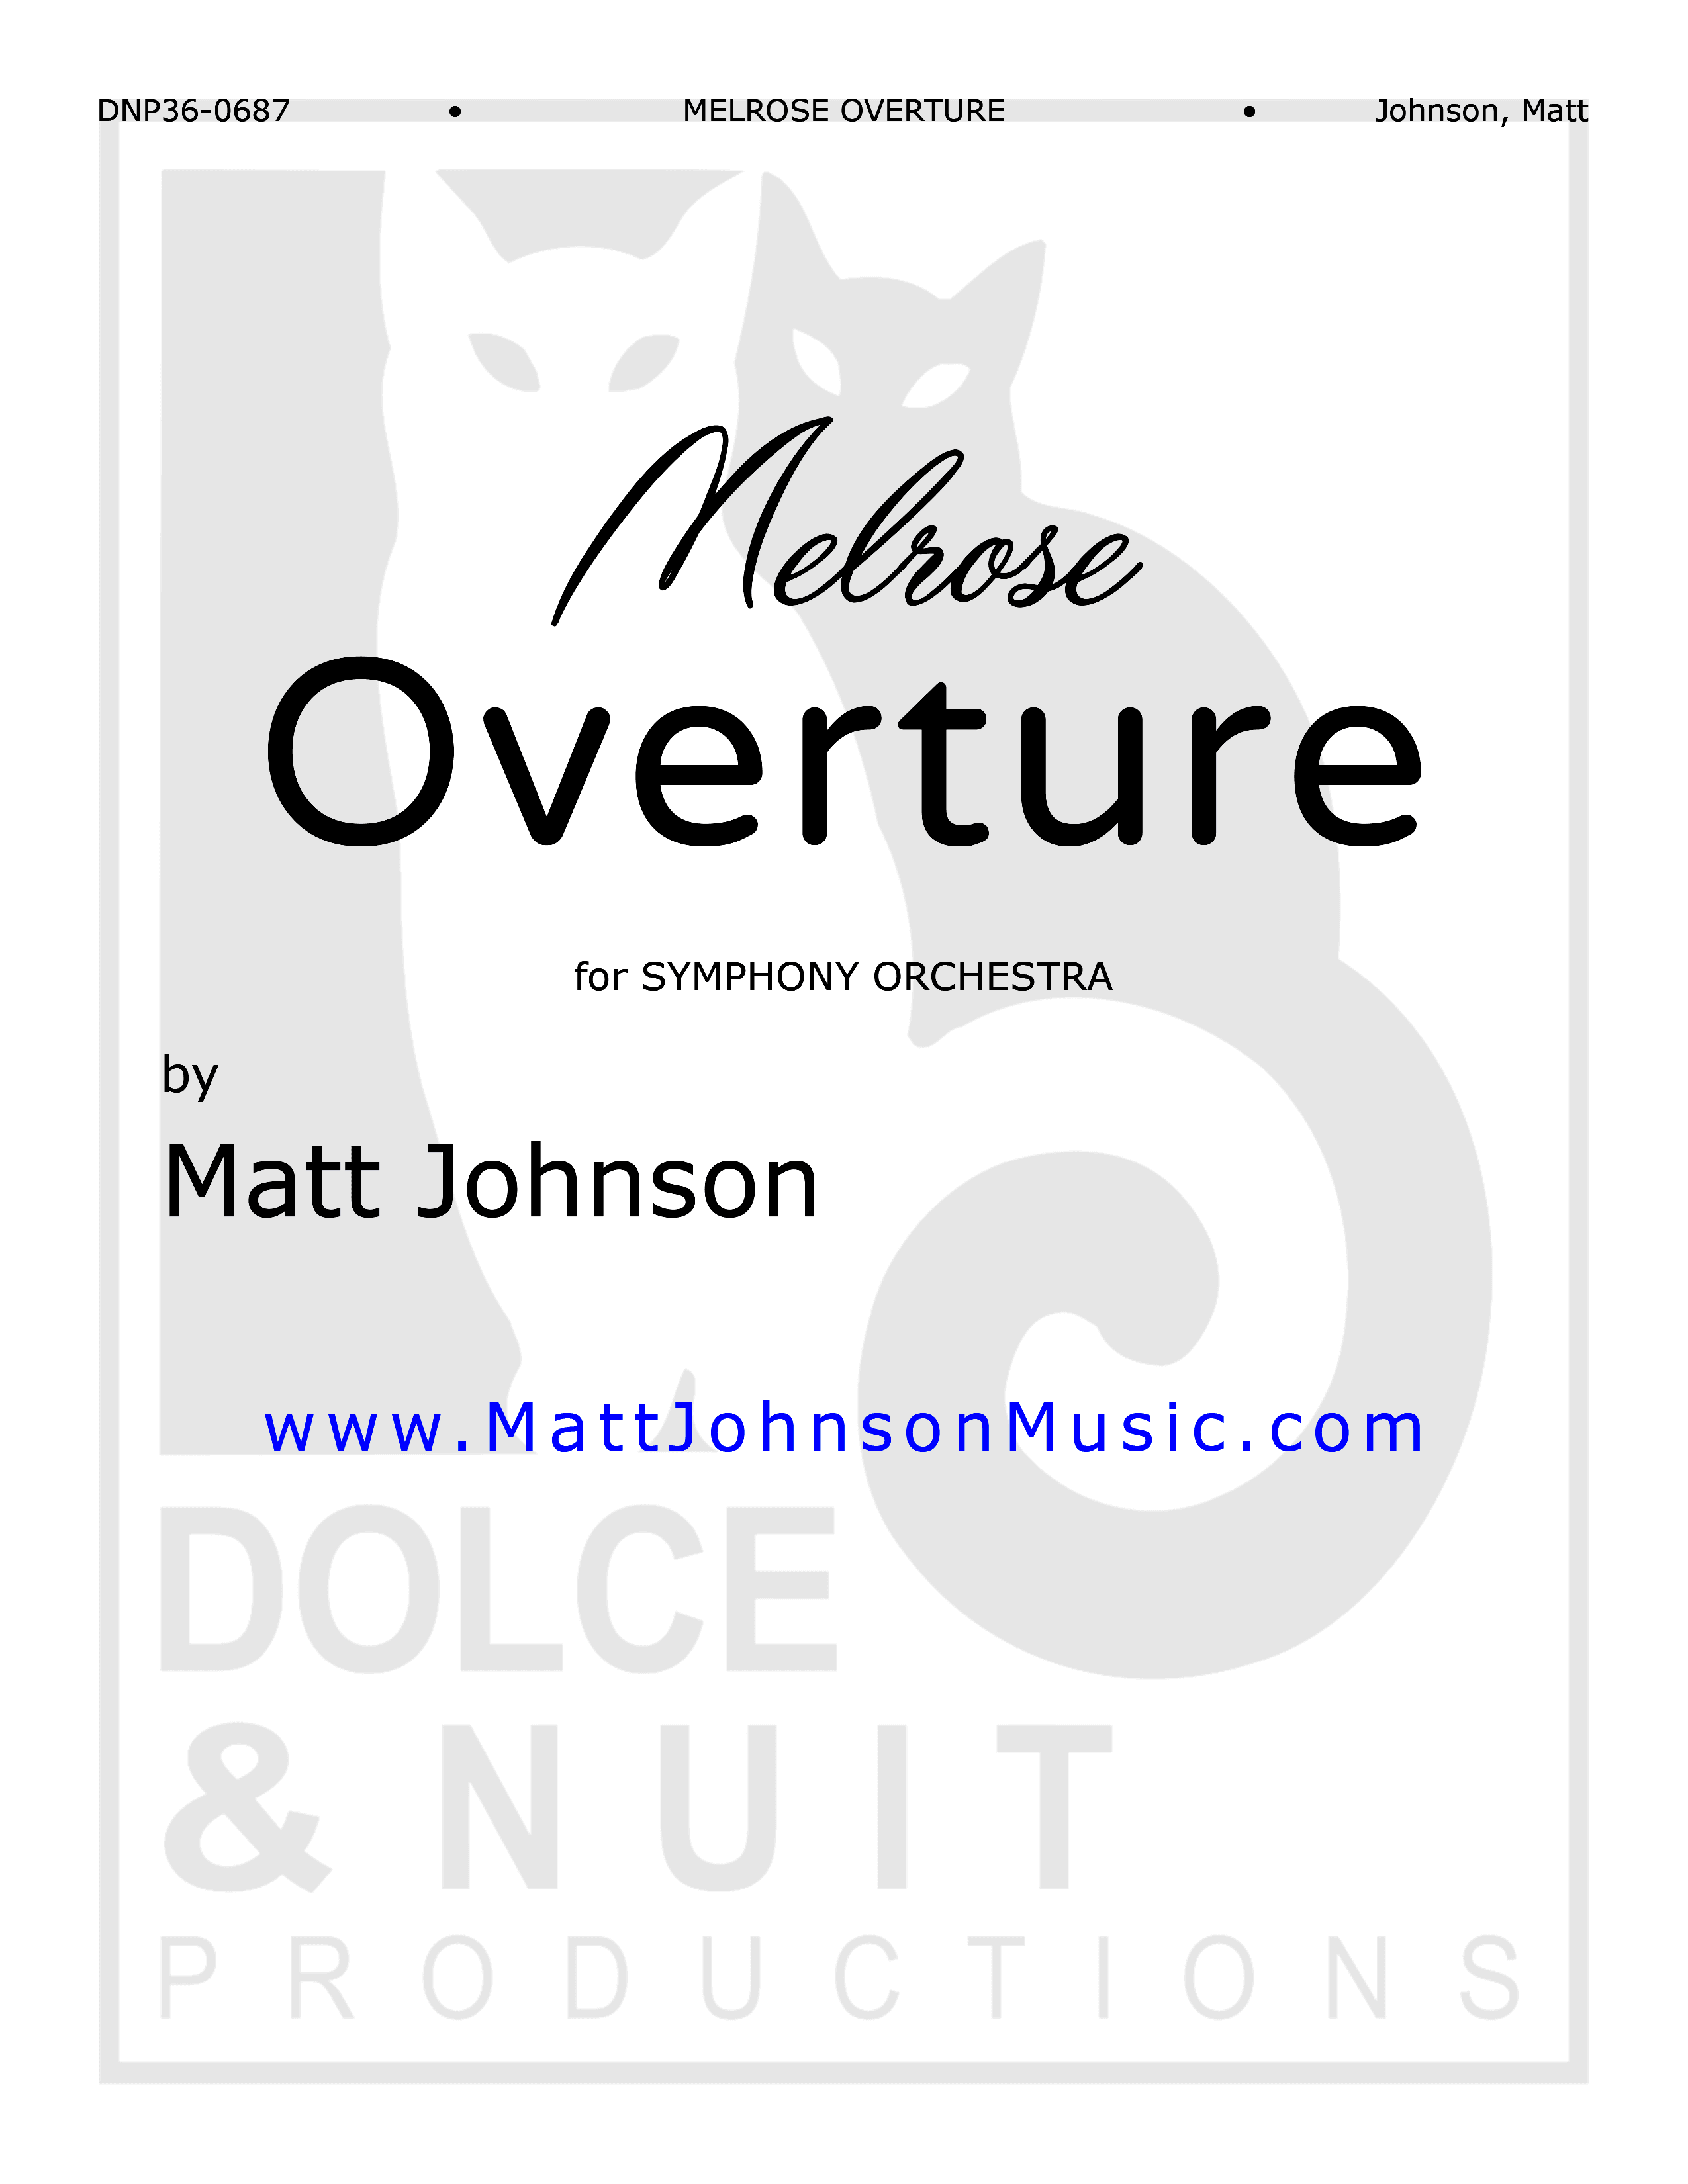 Melrose Overture ~ symphony orchestra